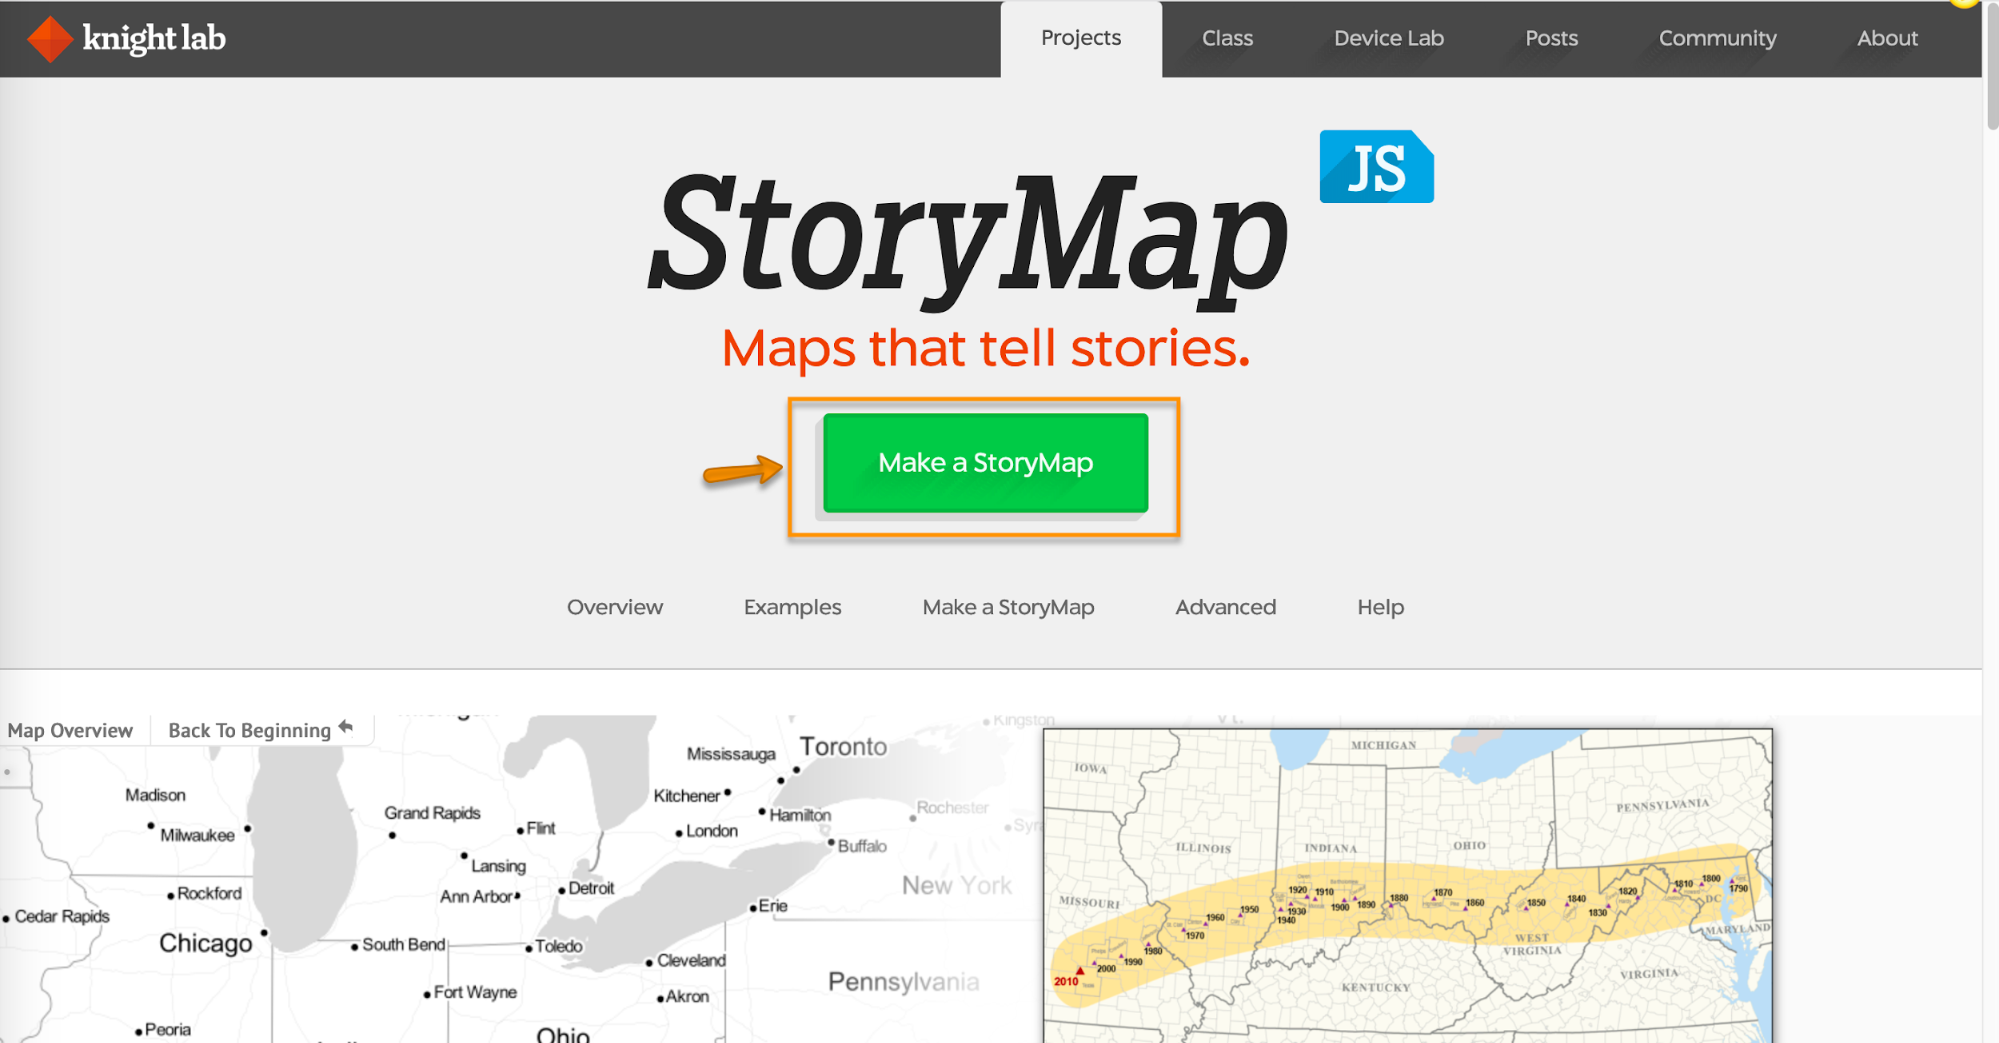 Story Map JS: Make a StoryMap.